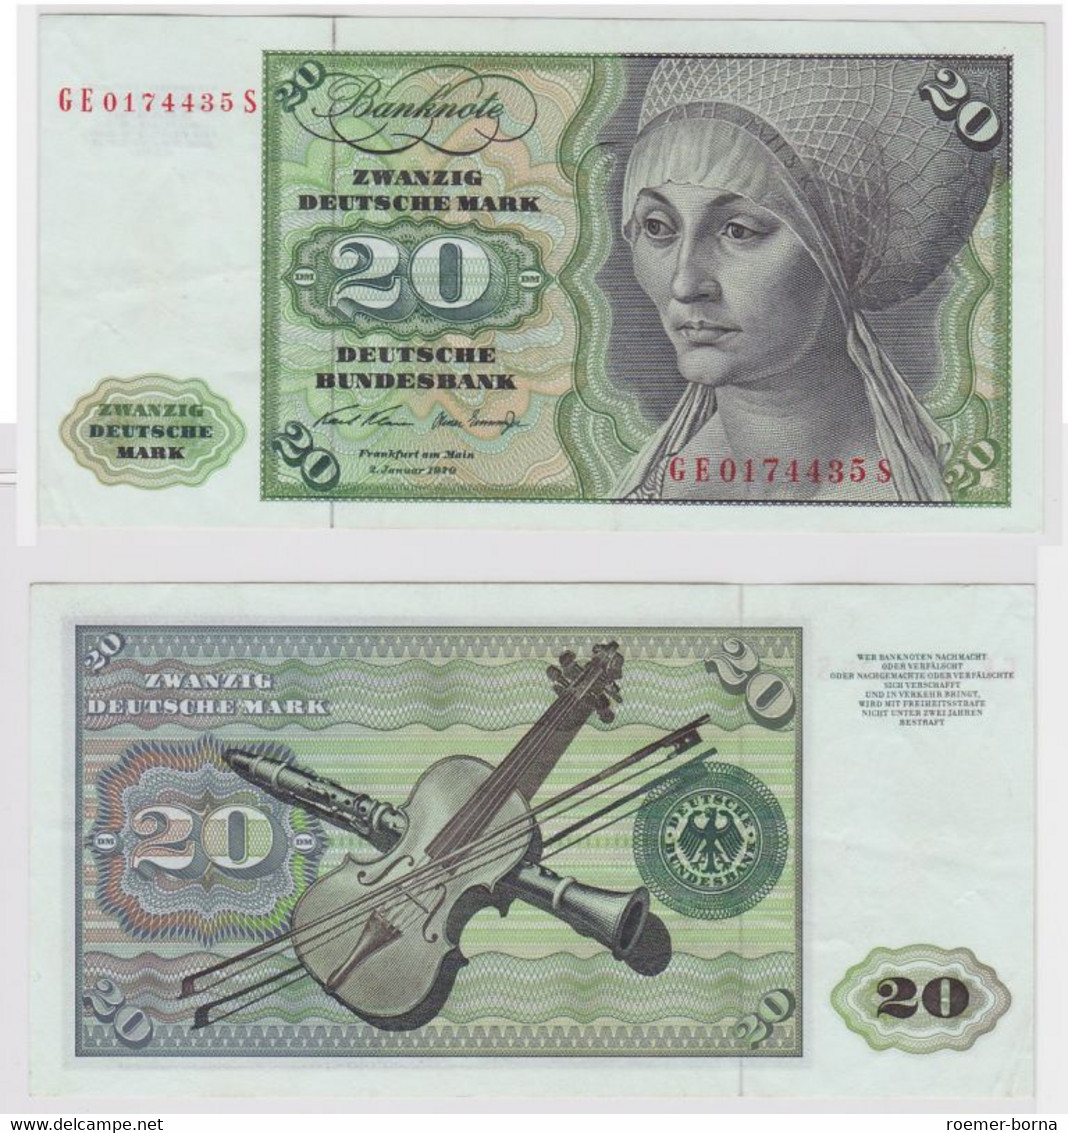 T148308 Banknote 20 DM Deutsche Mark Ro. 271b Schein 2.Jan. 1970 KN GE 0174435 S - 20 DM